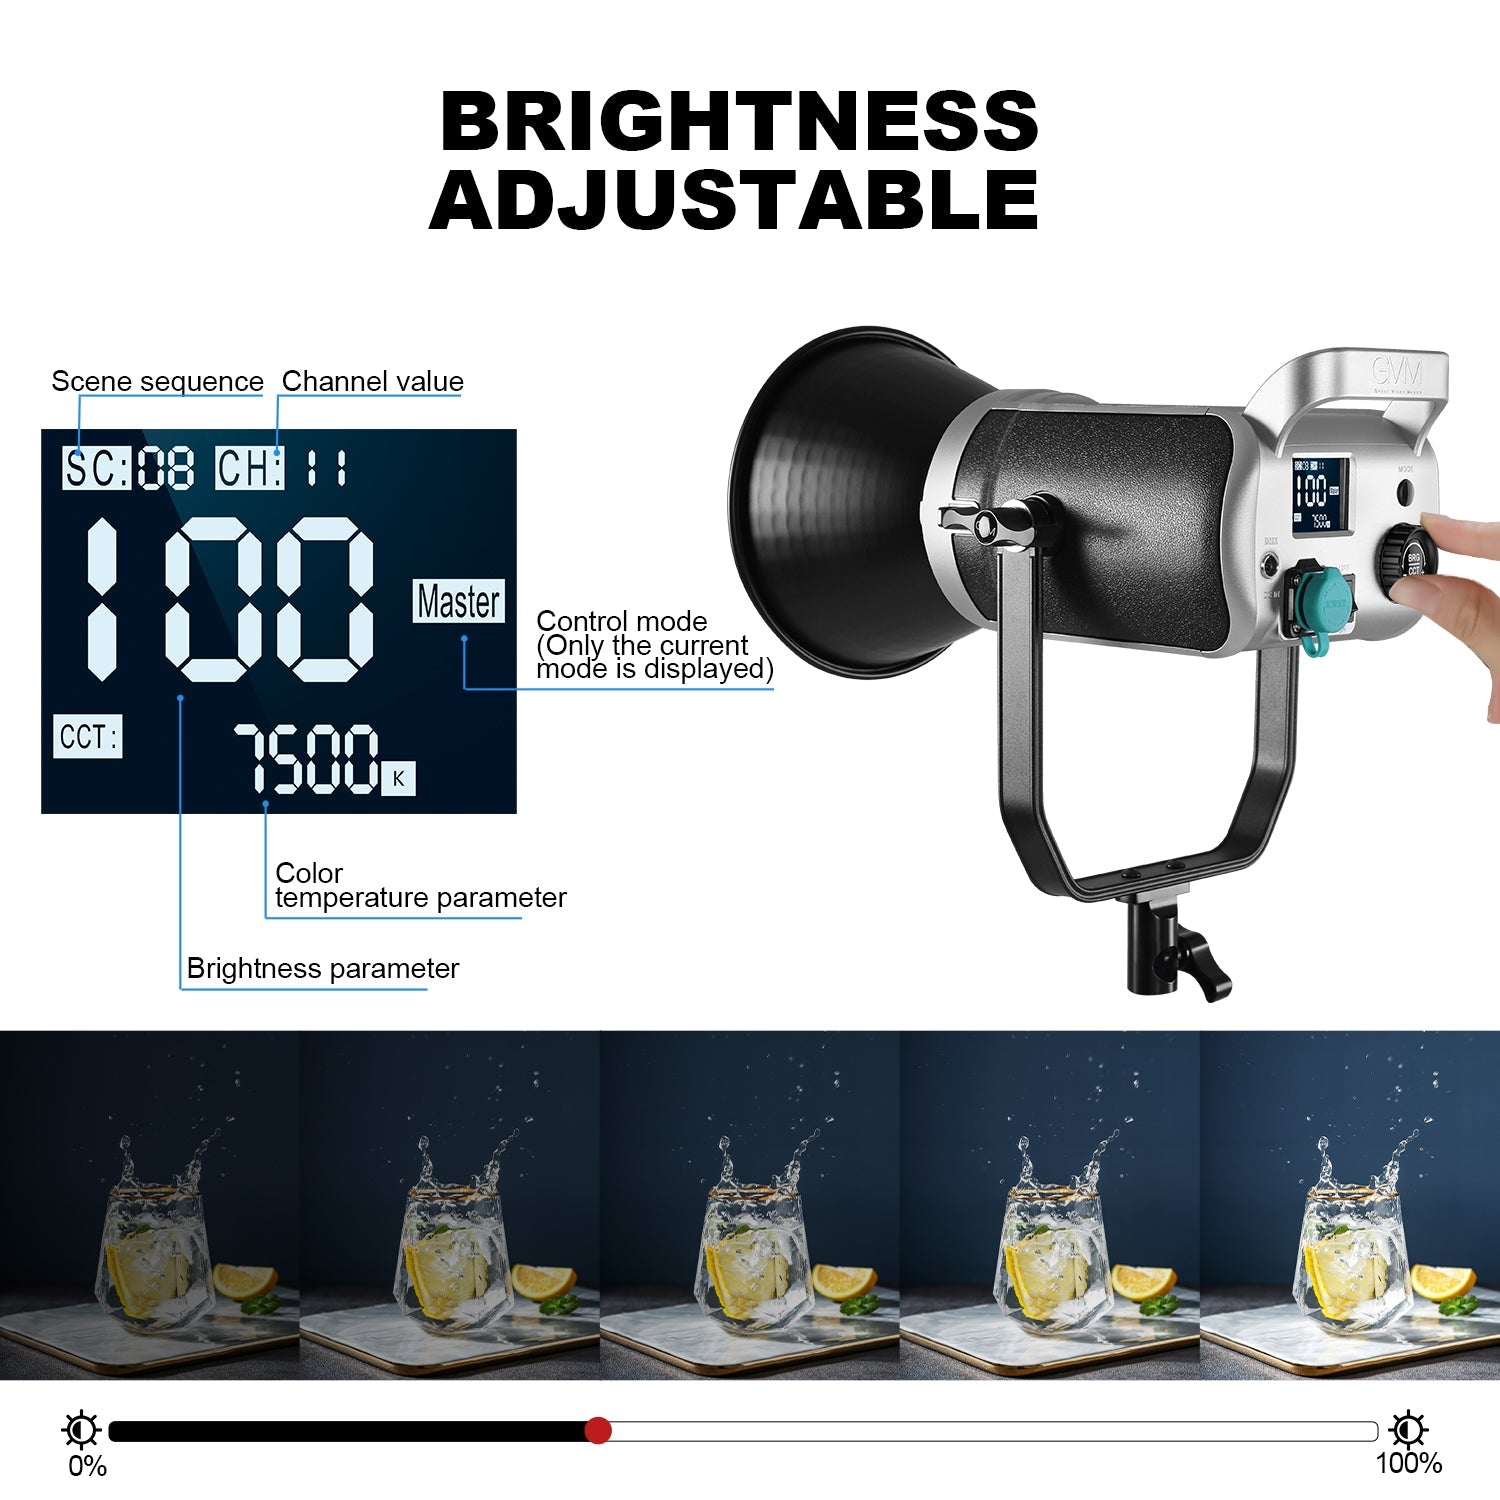 GVM-SD300D 300W Bi-Color LED Video Light High Power Monolight 3 kits - GVMLED